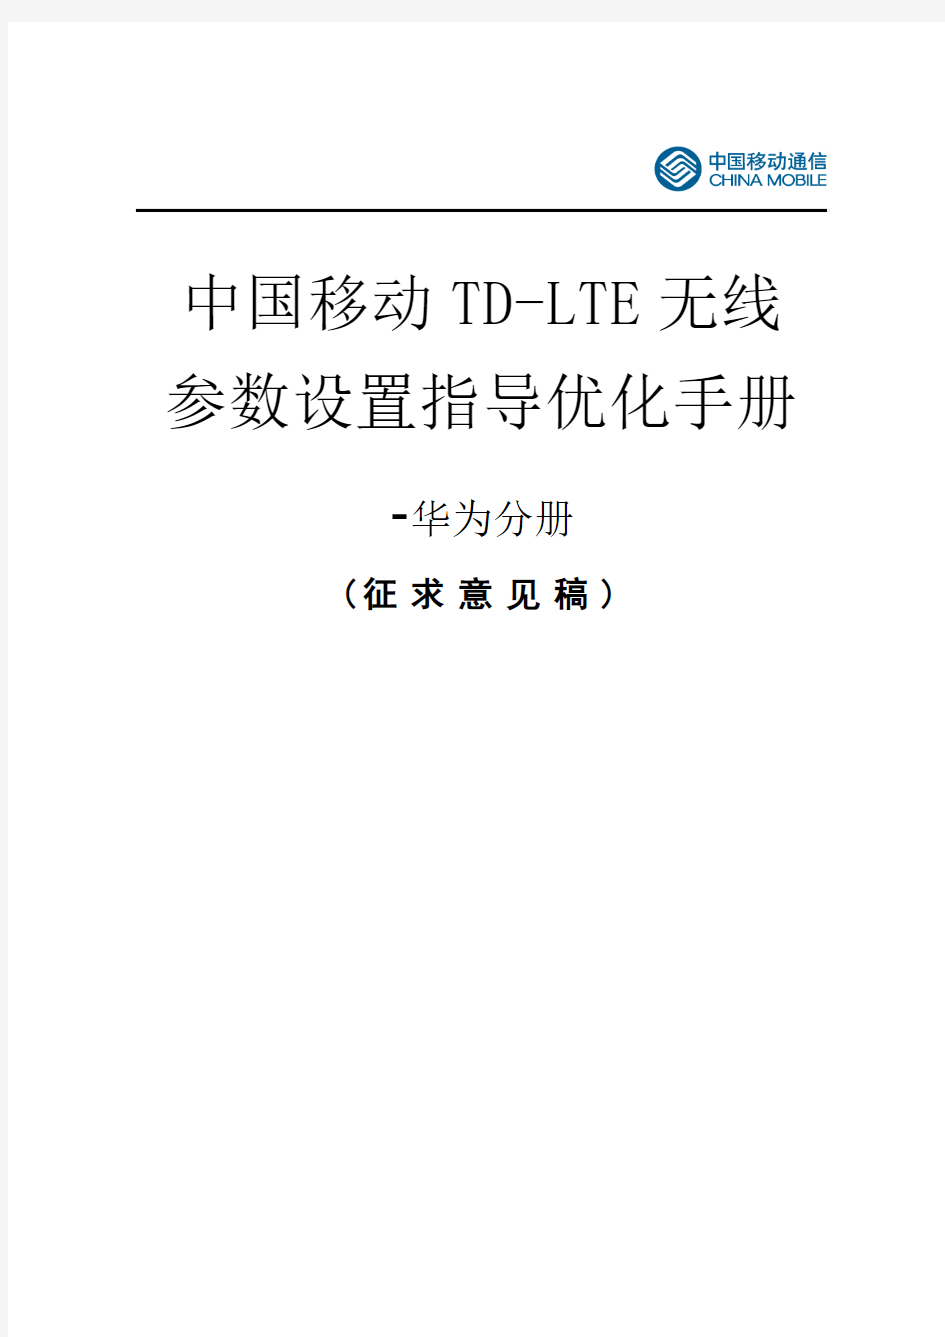 中国移动TD-LTE无线参数设置指导优化手册-华为分册